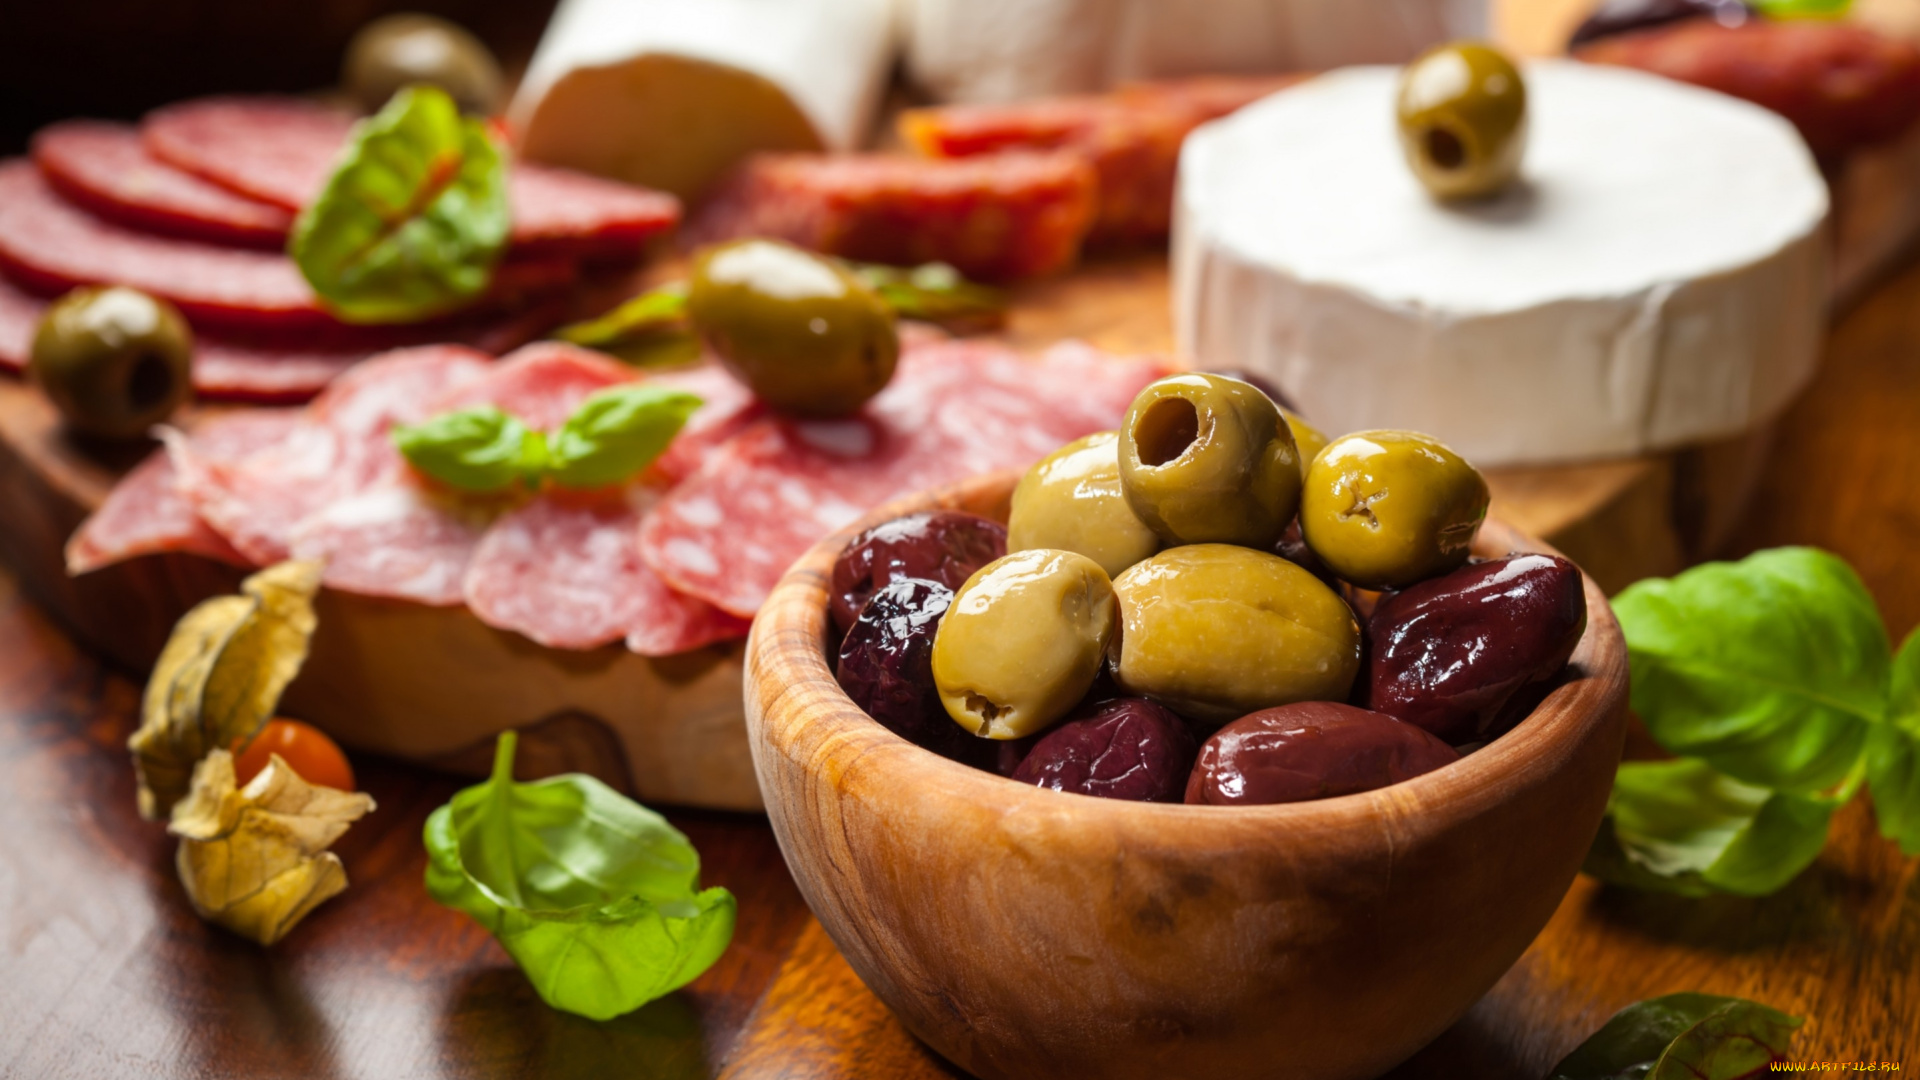 еда, разное, салями, листья, колбаса, сыр, оливки, маслины